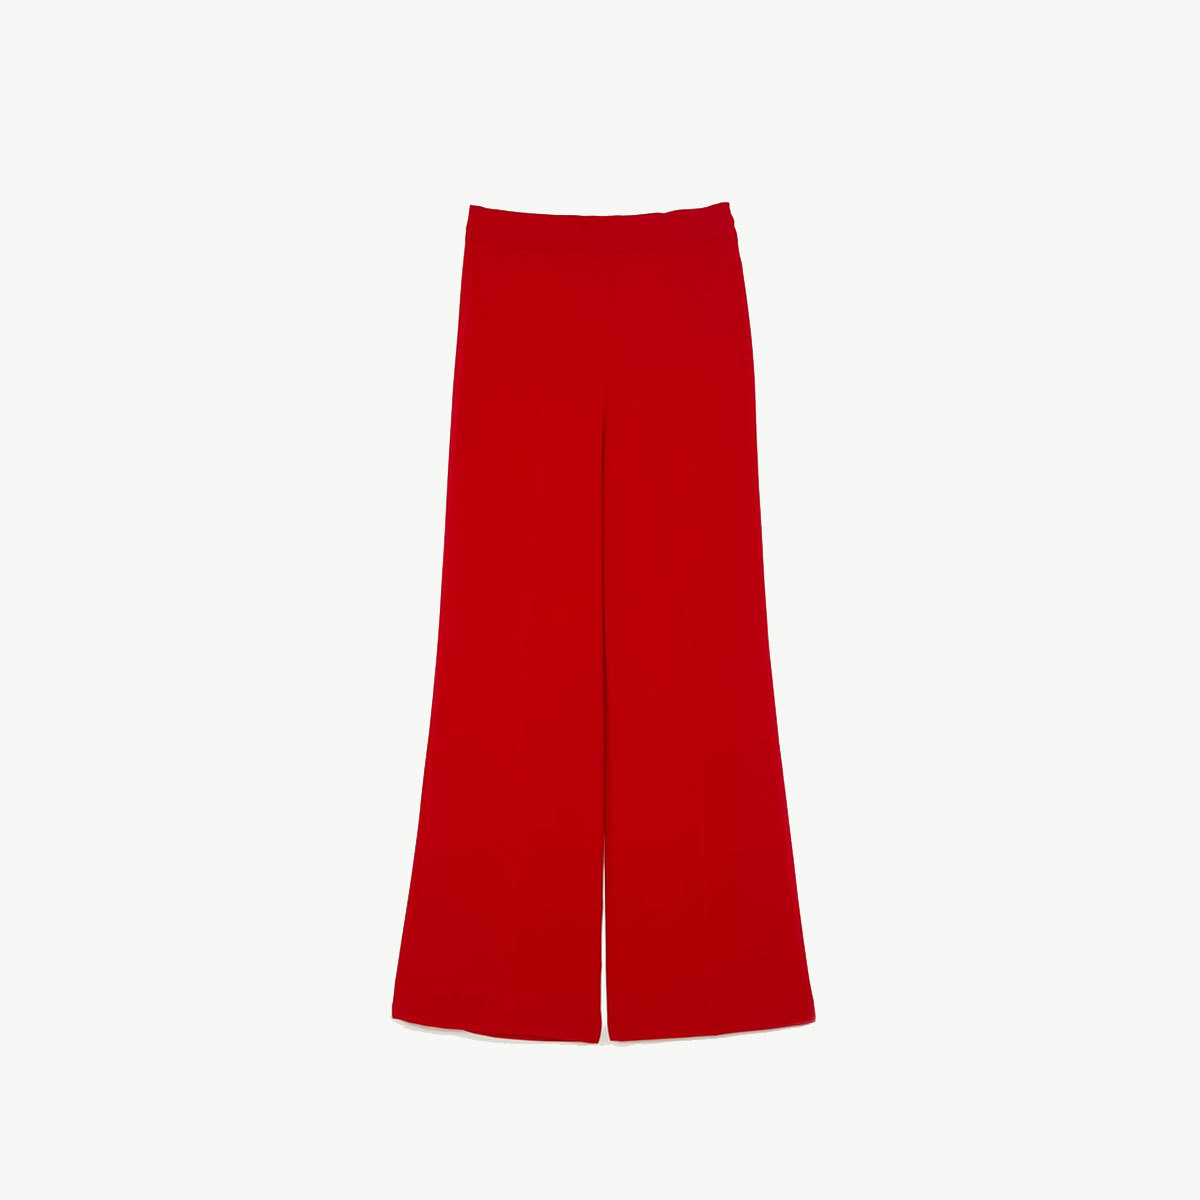 Pantalón de sastre rojo, de Zara (39,95 euros).